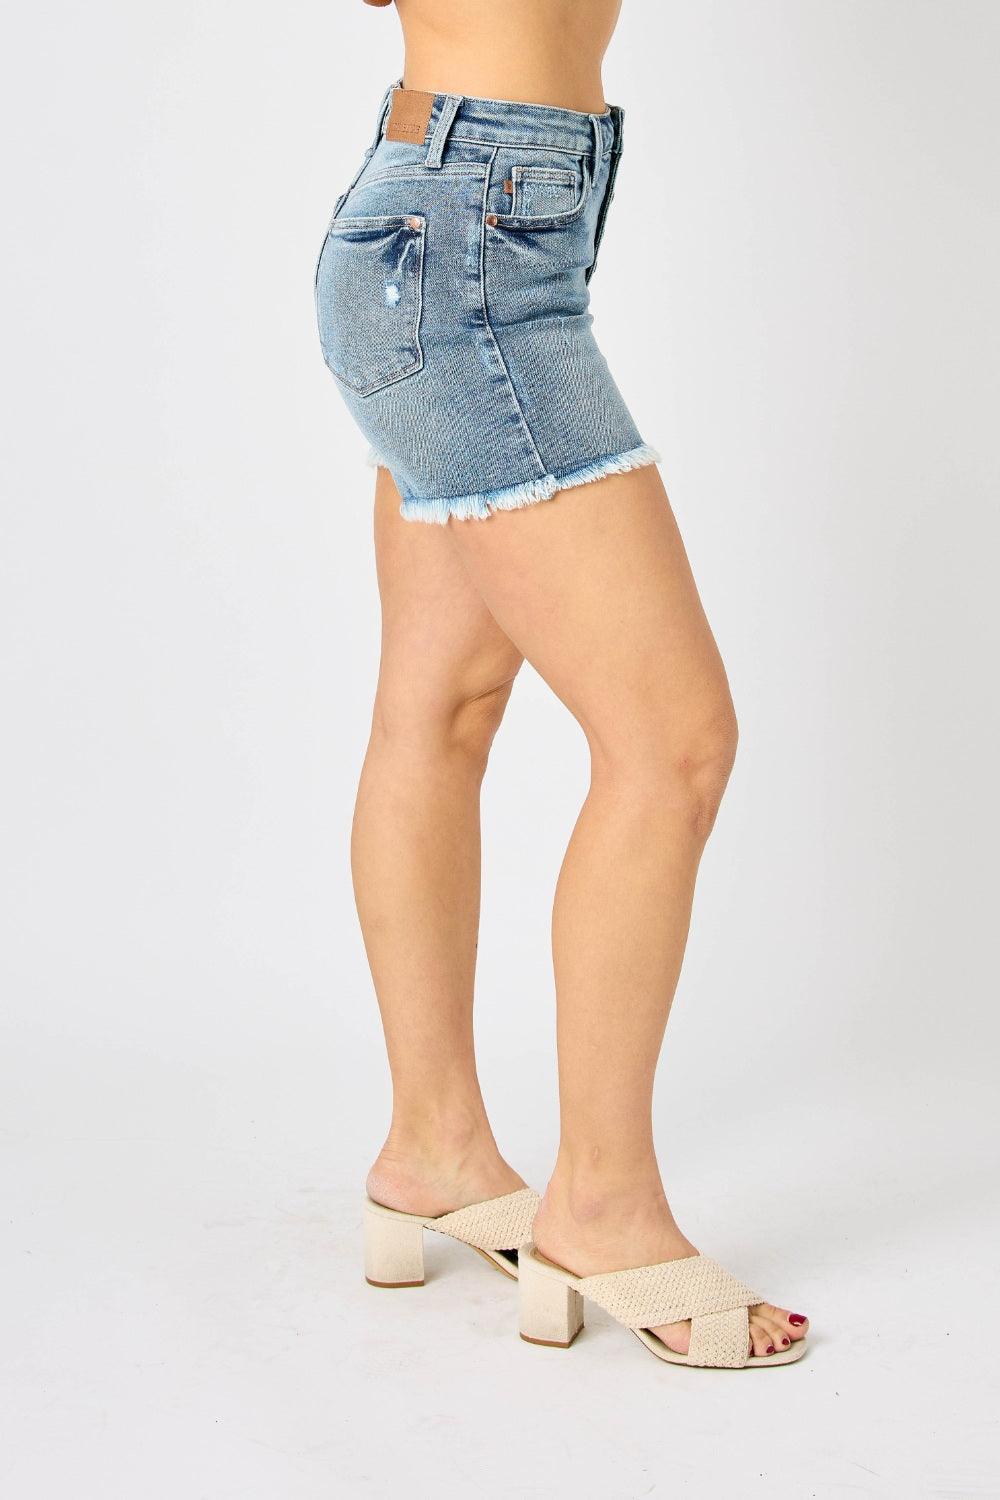 Judy Blue Full Size Button Fly Raw Hem Denim Shorts - AMIClubwear